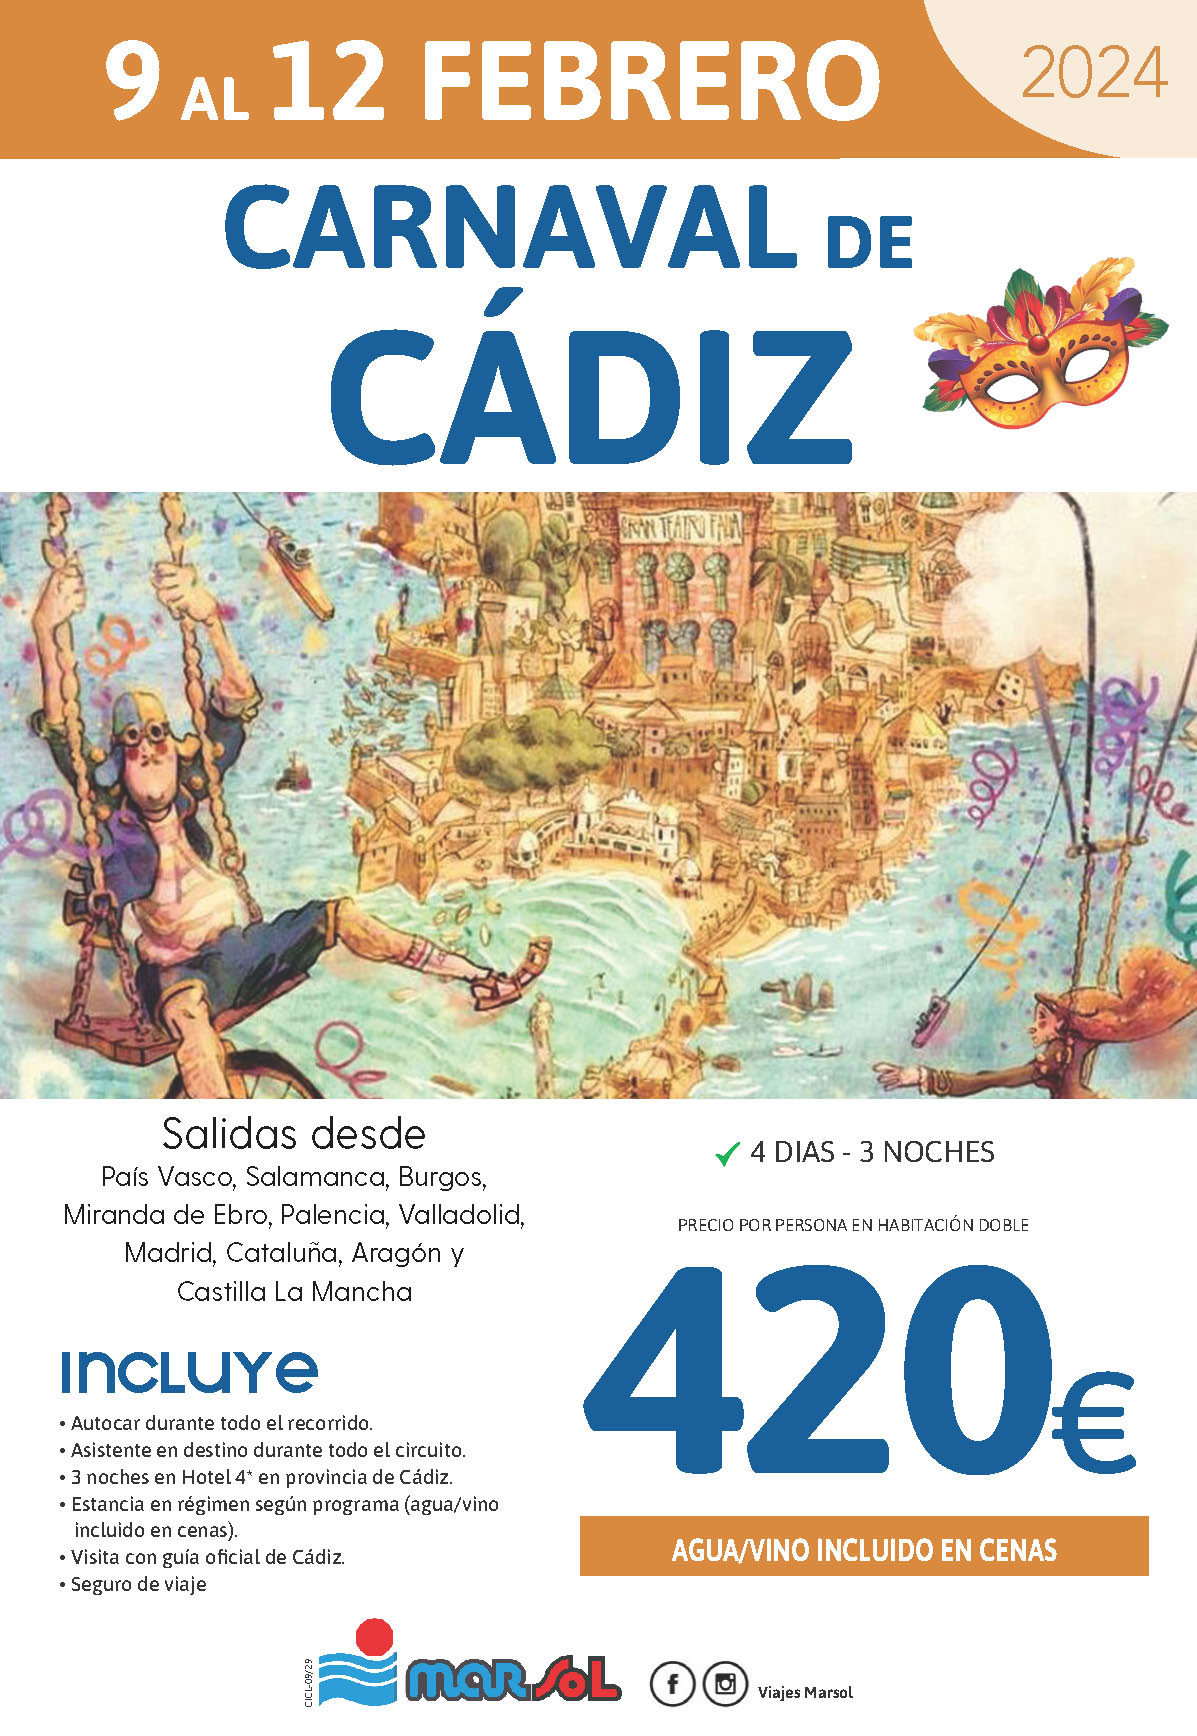 Oferta Marsol Carnaval de Cadiz 2024 4 dias salidas 9 febrero desde el Norte de España